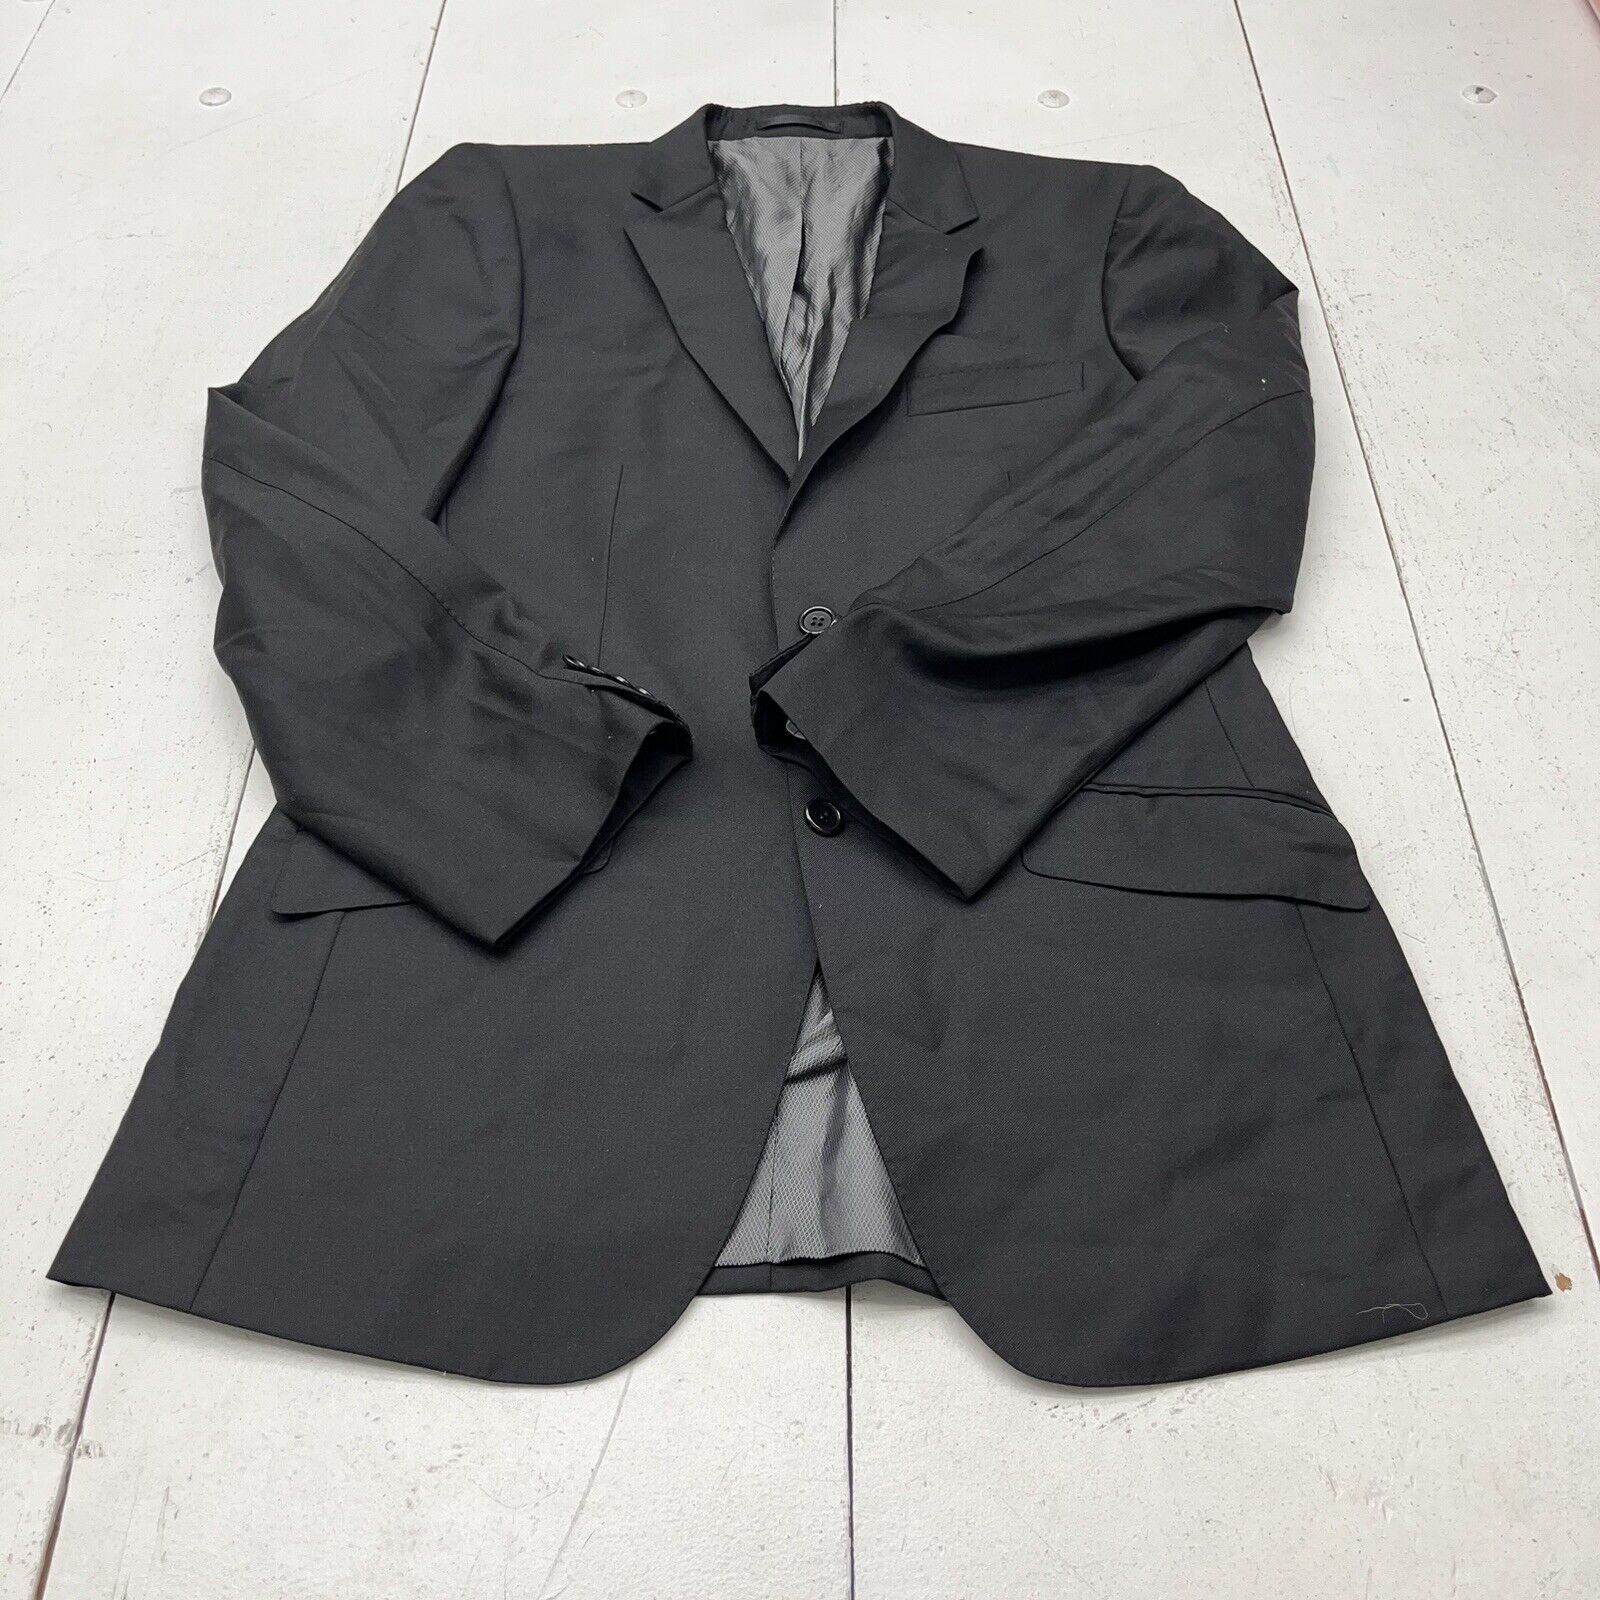 Sebastian Grey Black Suit Jacket Men's Size Large beyond exchange